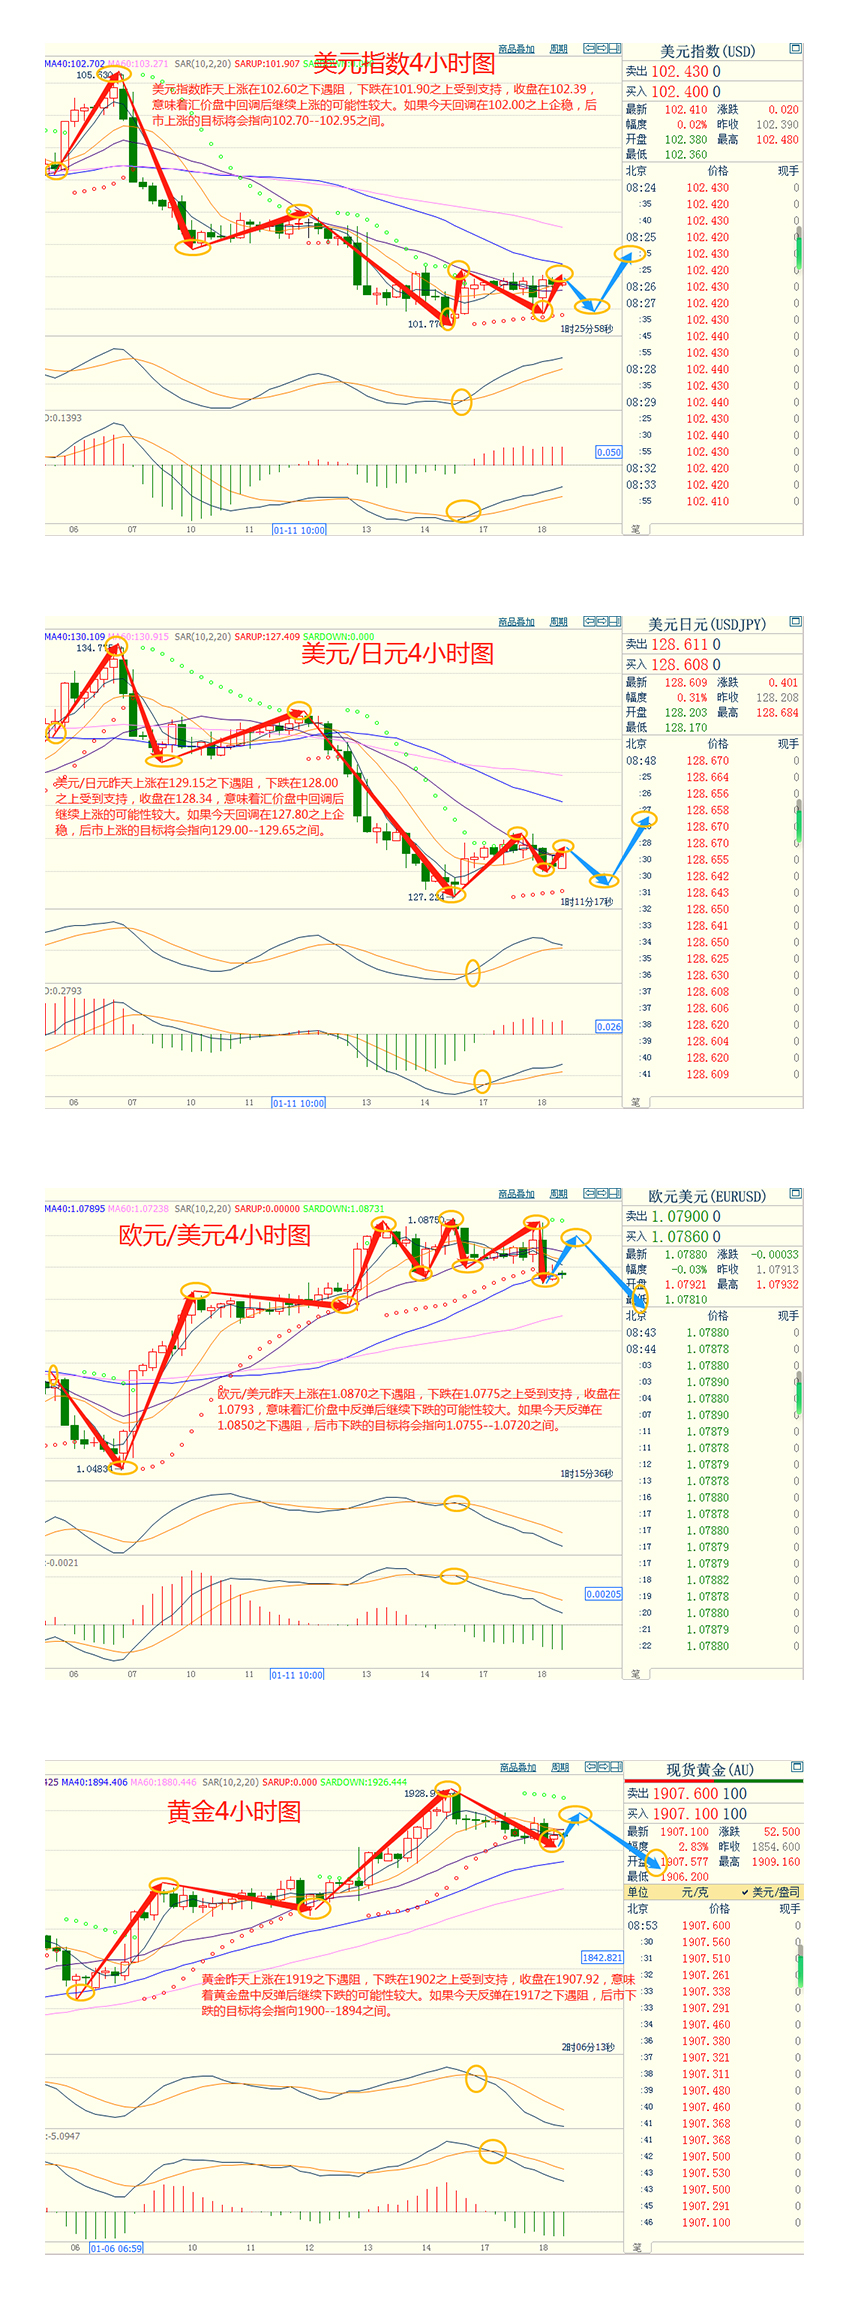 CWG资讯：美元继续维持低位震荡状态，金价从八个月高位回落，市场聚焦日本央行预期的政策调整